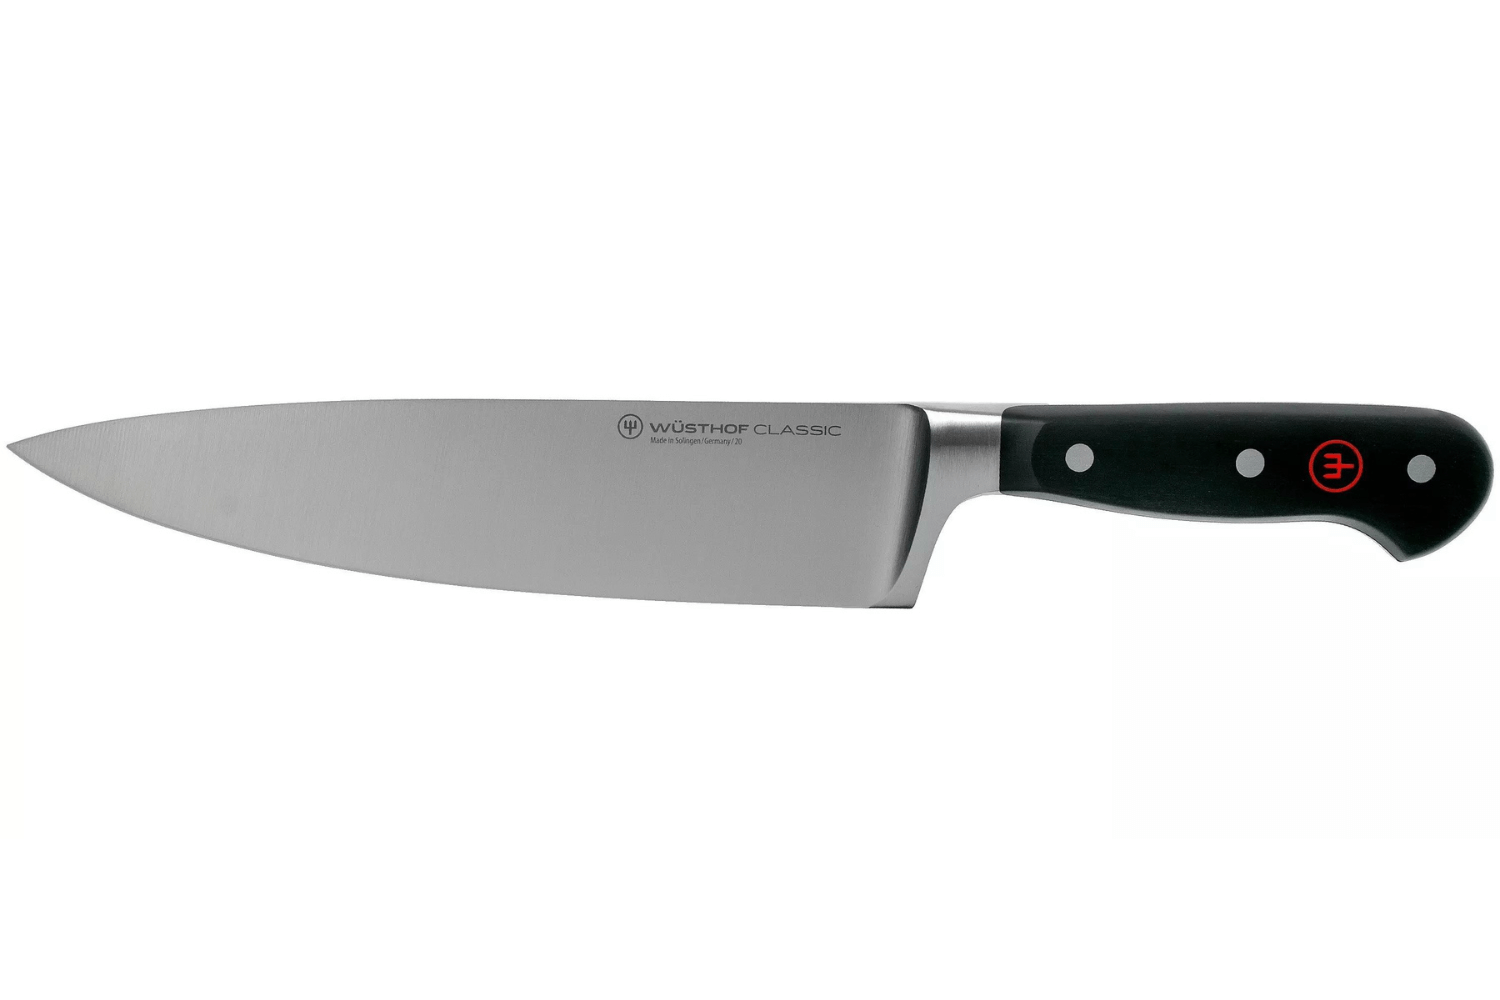 Petits couteaux 1 – Chef Michel Dumas